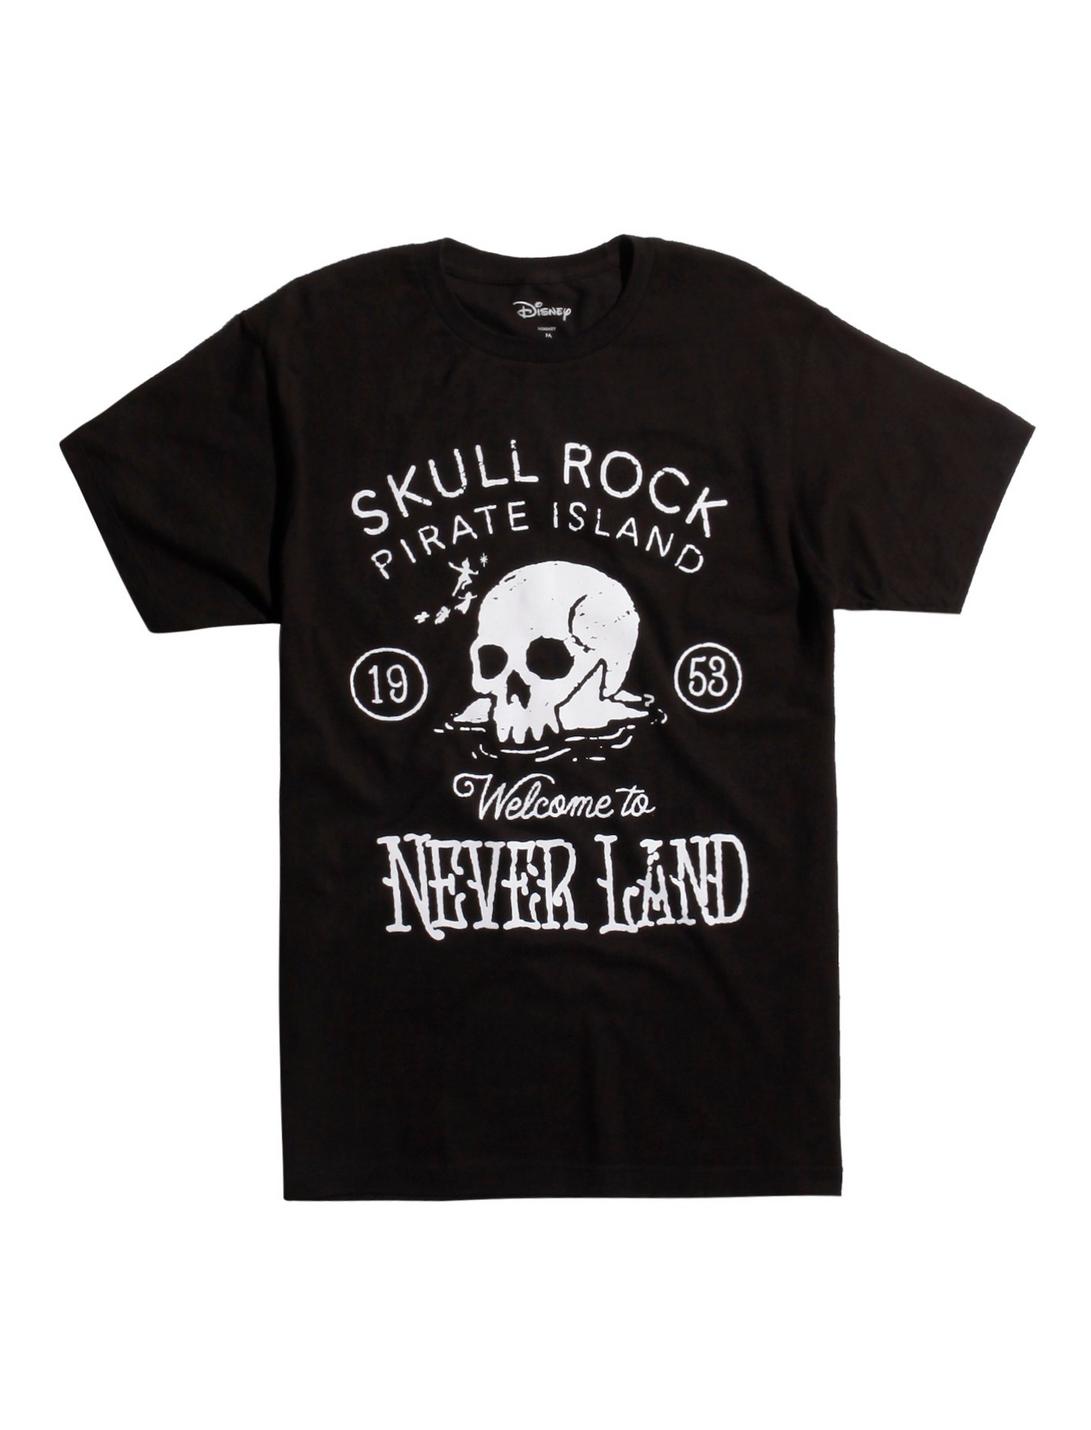 Disney Peter Pan Pirate Island Skull Rock T-Shirt, BLACK, hi-res